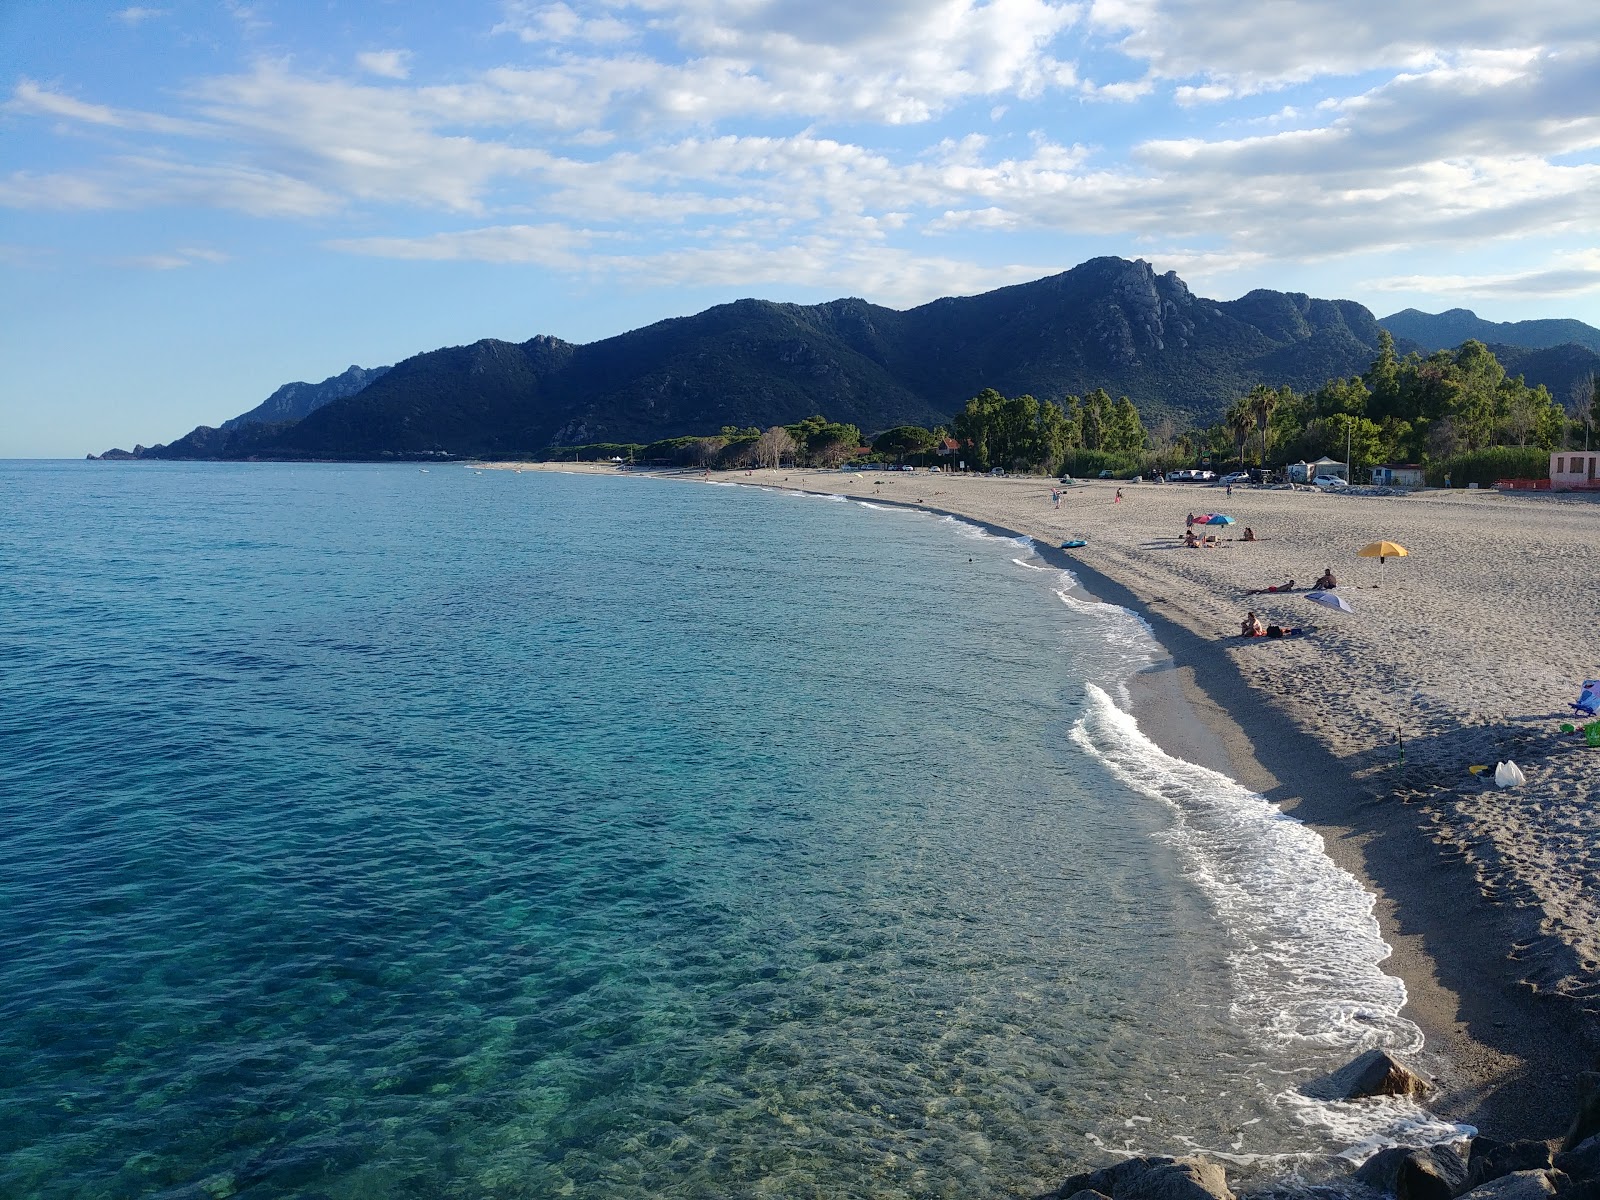 Spiaggia di Museddu'in fotoğrafı - rahatlamayı sevenler arasında popüler bir yer